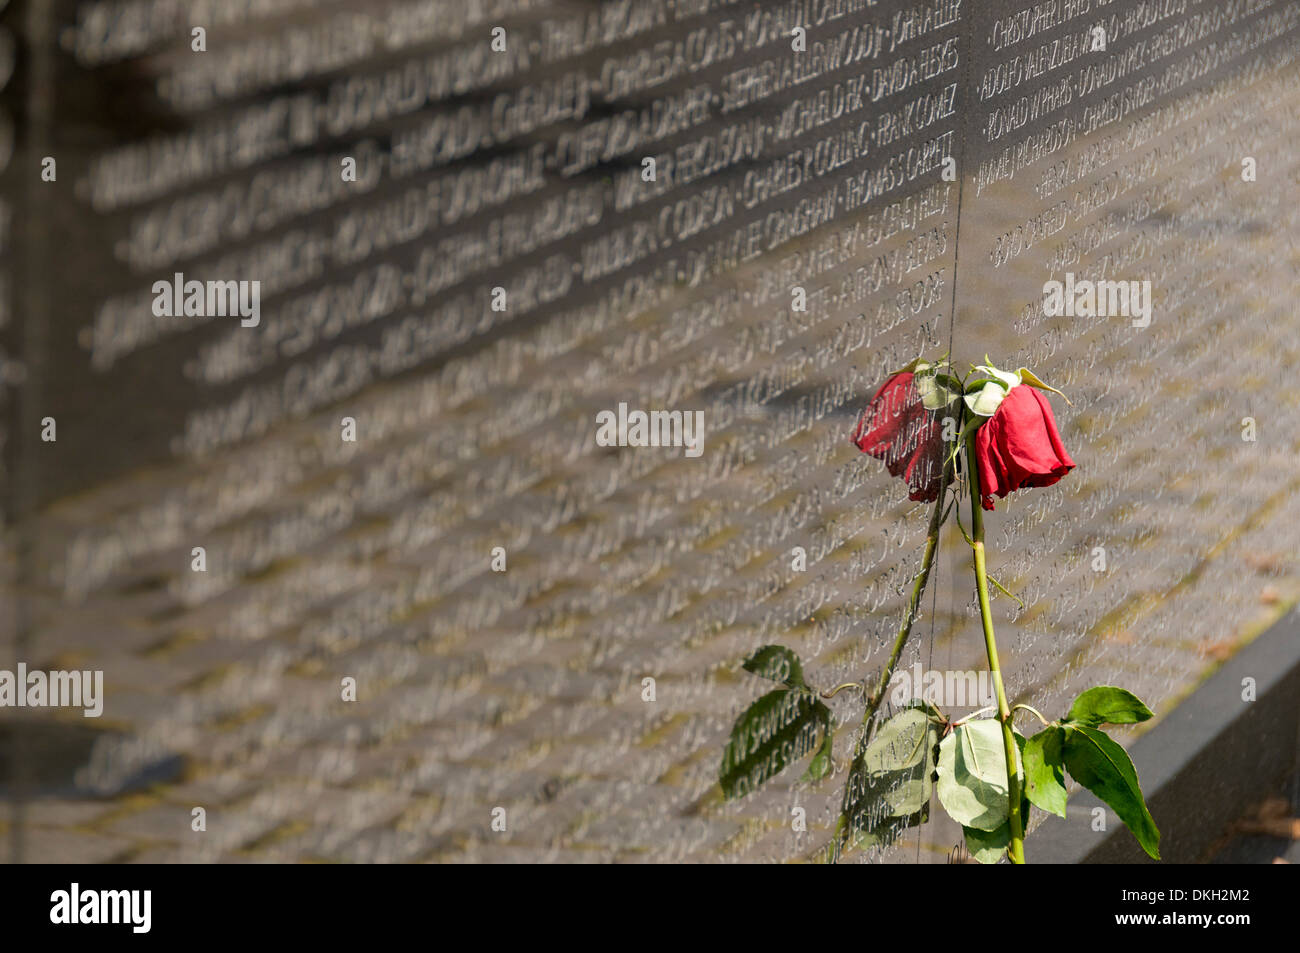 Guerre du Vietnam Veterans Memorial, Washington, D.C., États-Unis d'Amérique, Amérique du Nord Banque D'Images